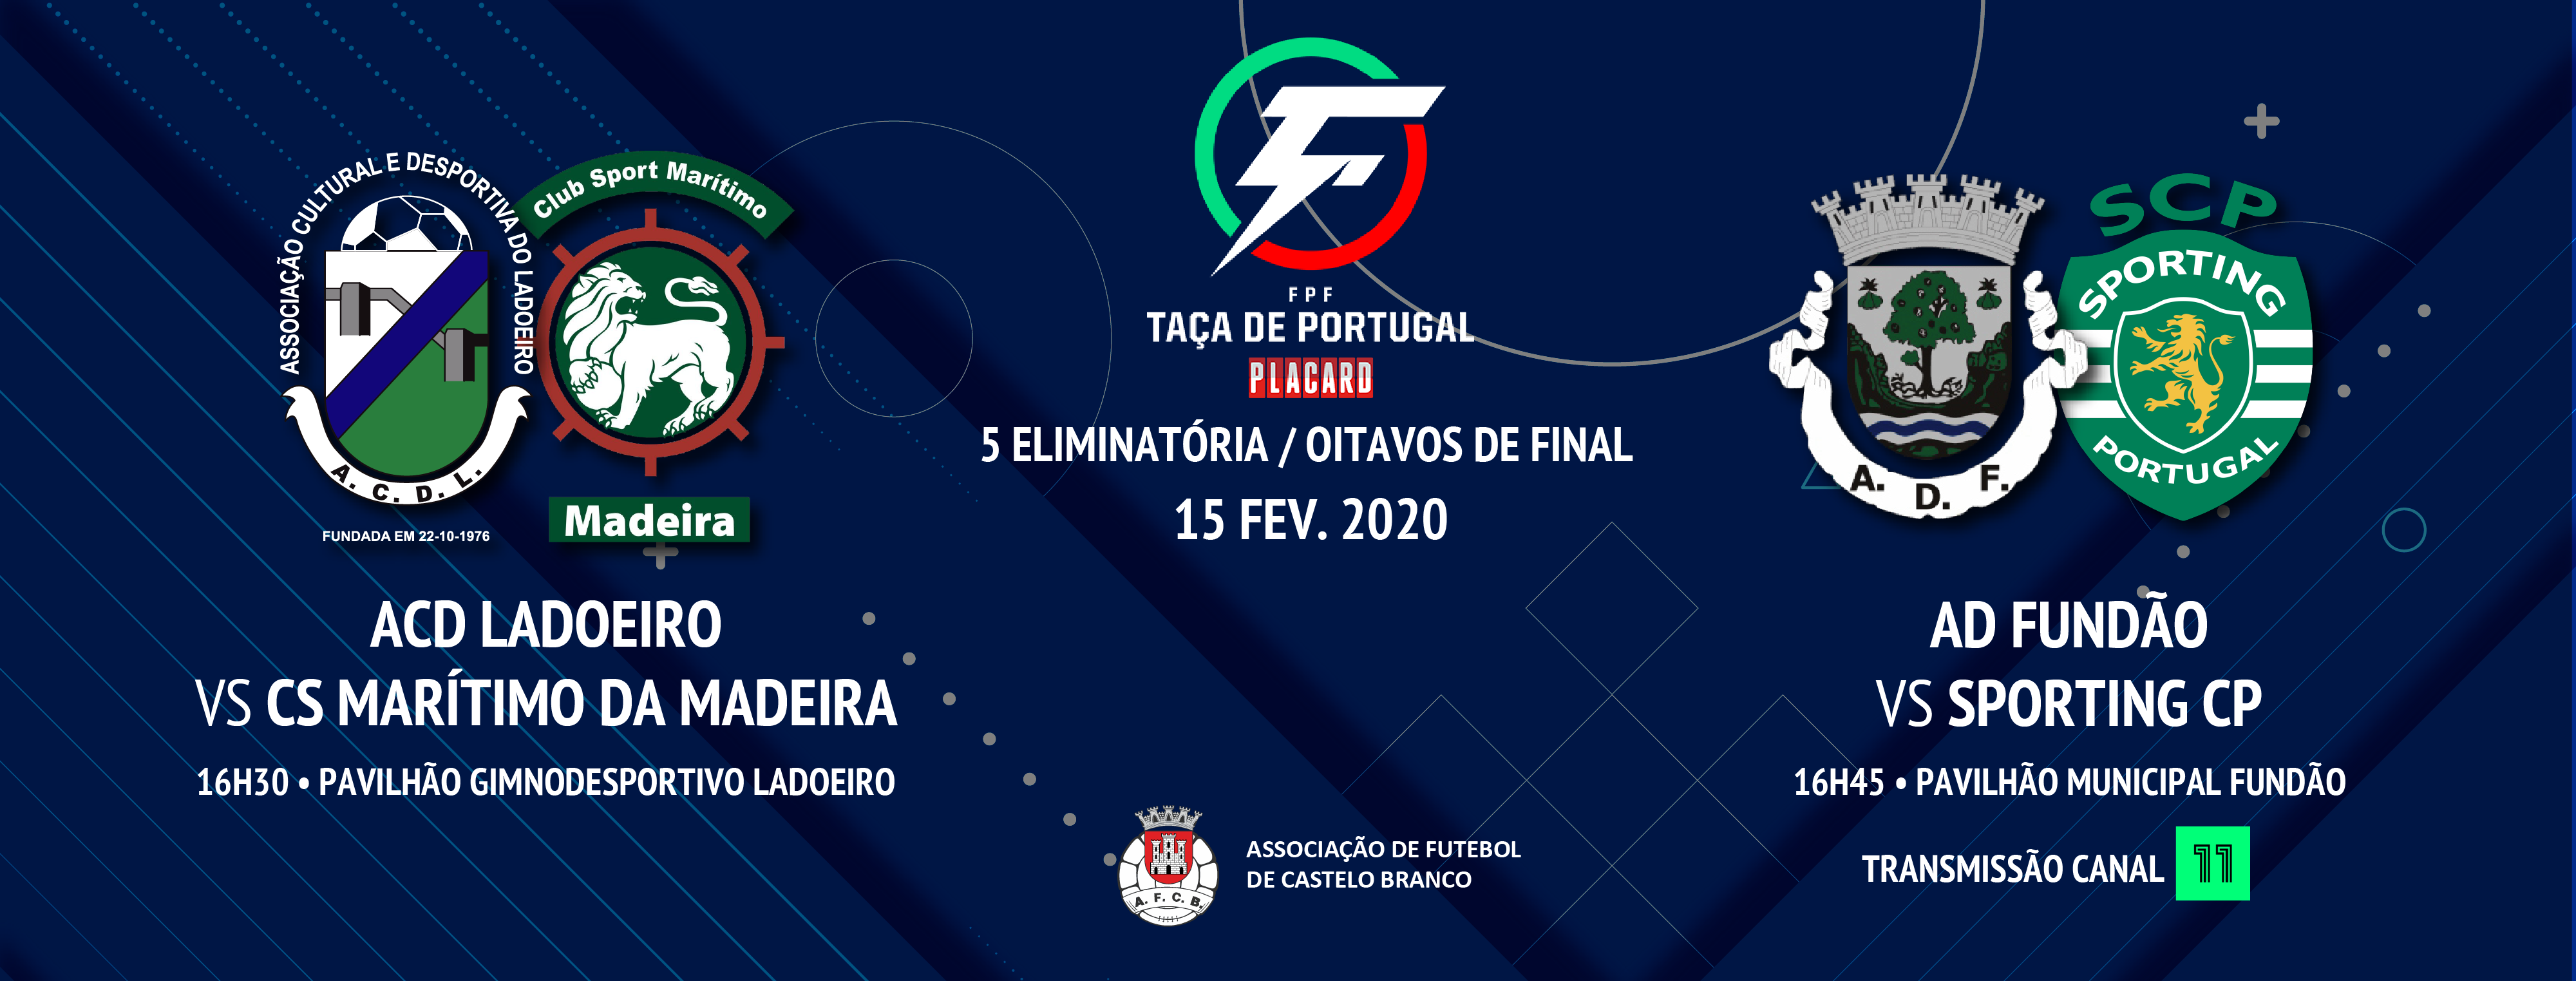 Futsal - Taça de Portugal Placard: ACD Ladoeiro e AD Fundão entram em ação